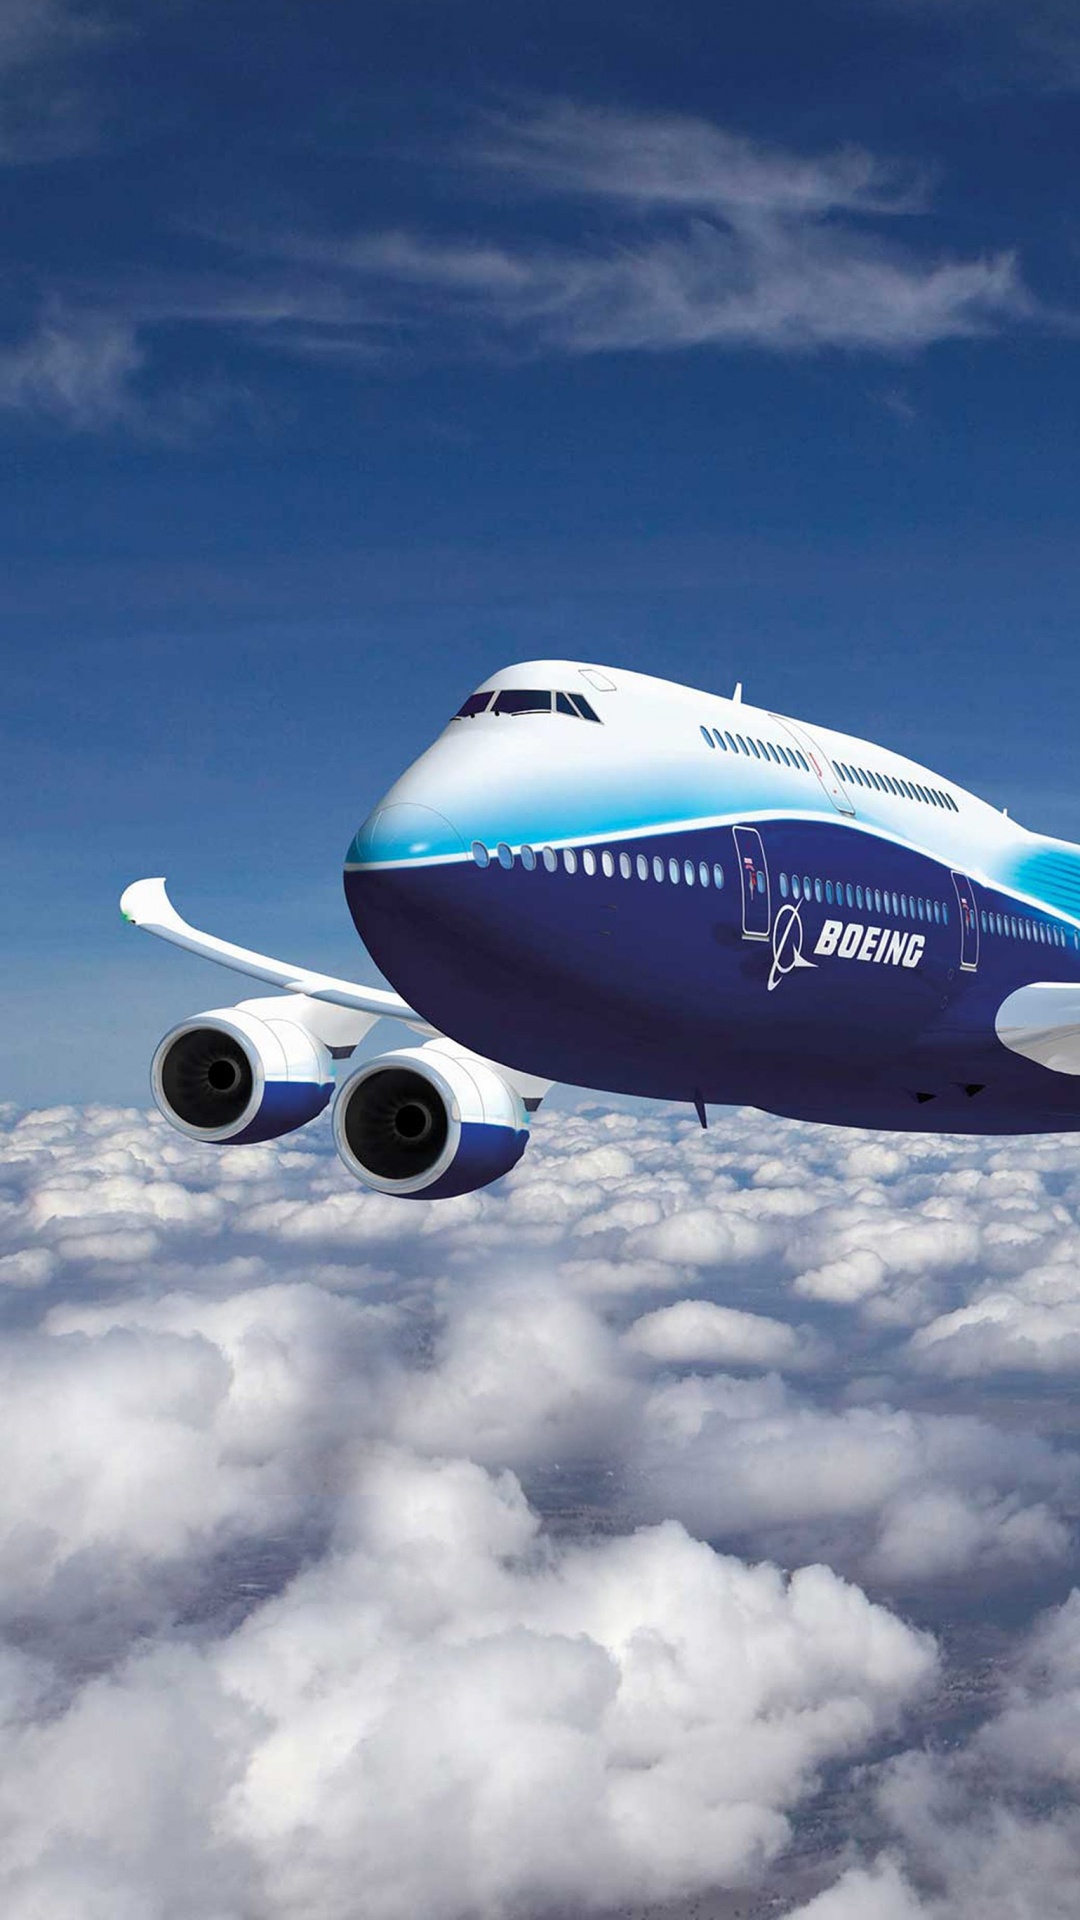 波音, 客机, 波音747, 航空公司, 空中旅行 壁纸 1080x1920 允许